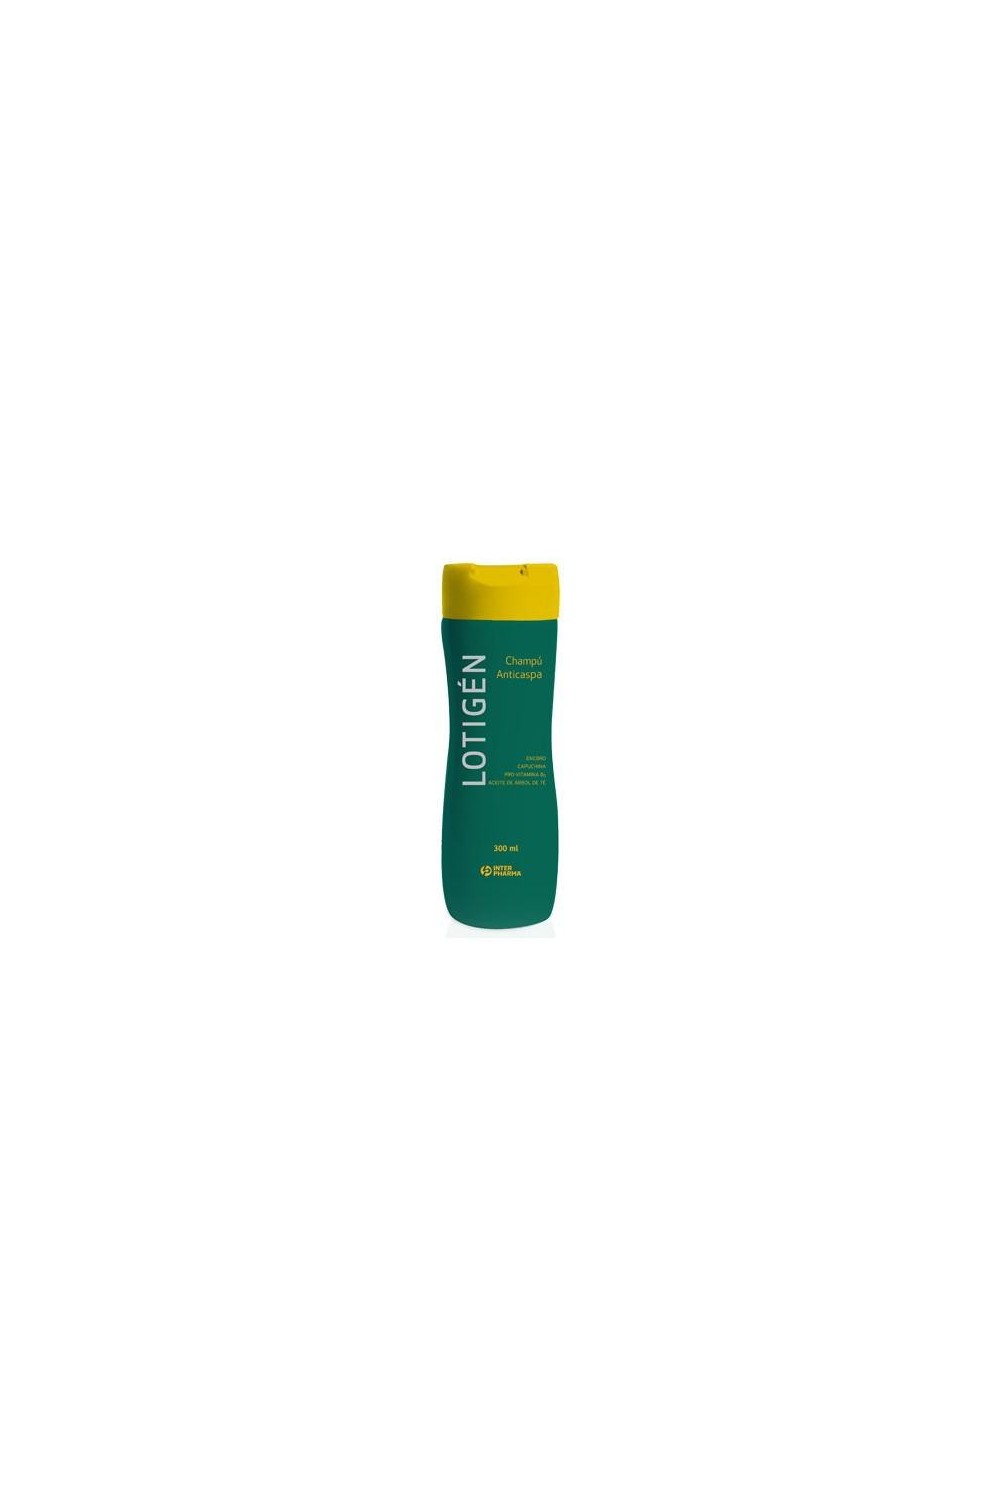 Interpharma Lotigen Anti Dandruff Shampoo 300ml